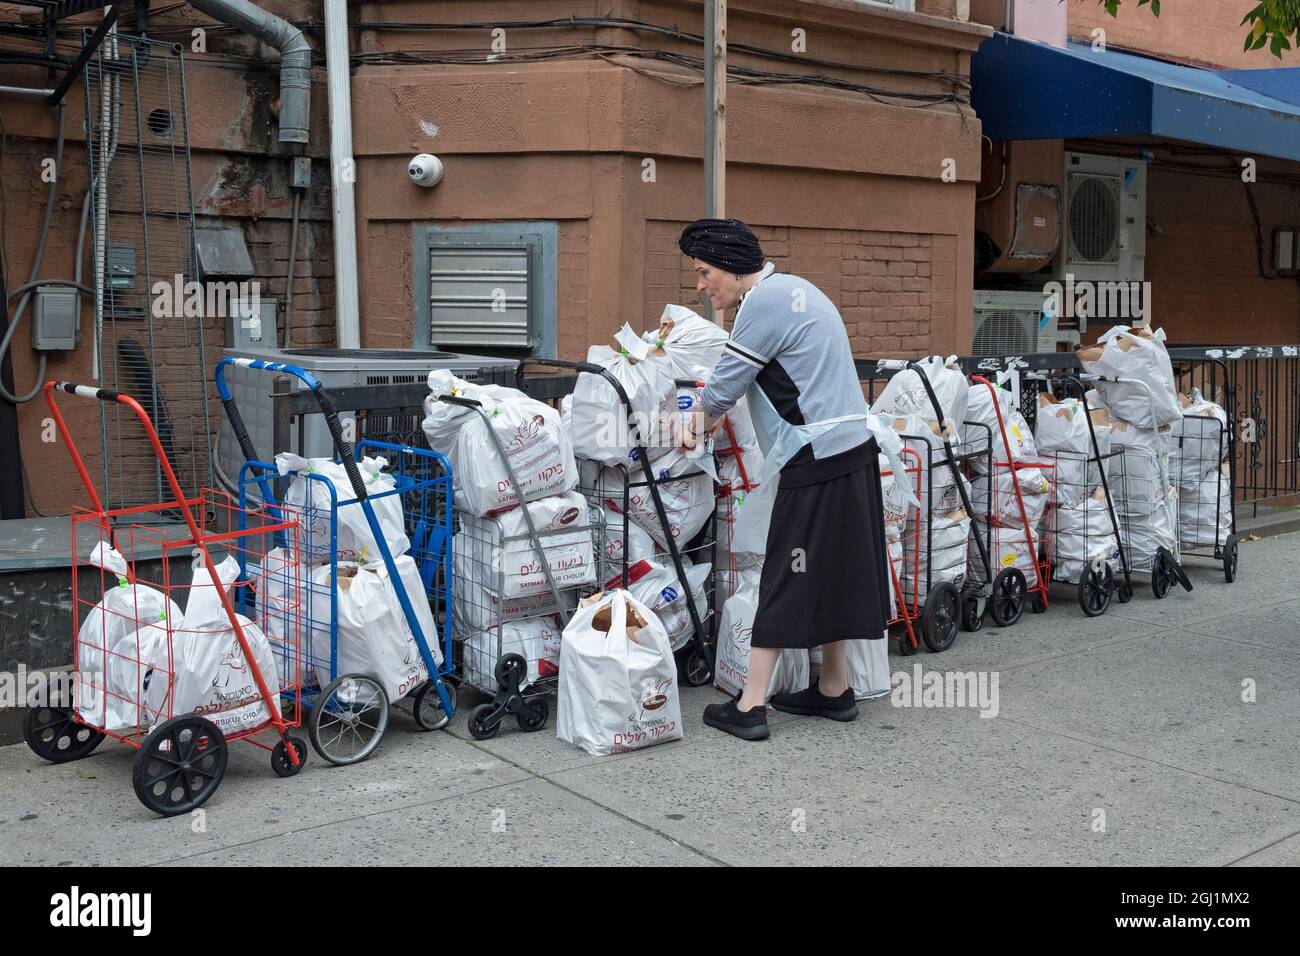 Un volontario del gruppo ebraico ortodosso di Satmar prepara pacchetti alimentari da dare ai bisognosi e a quelli negli ospedali che hanno bisogno di cibo glatt kosher. Foto Stock